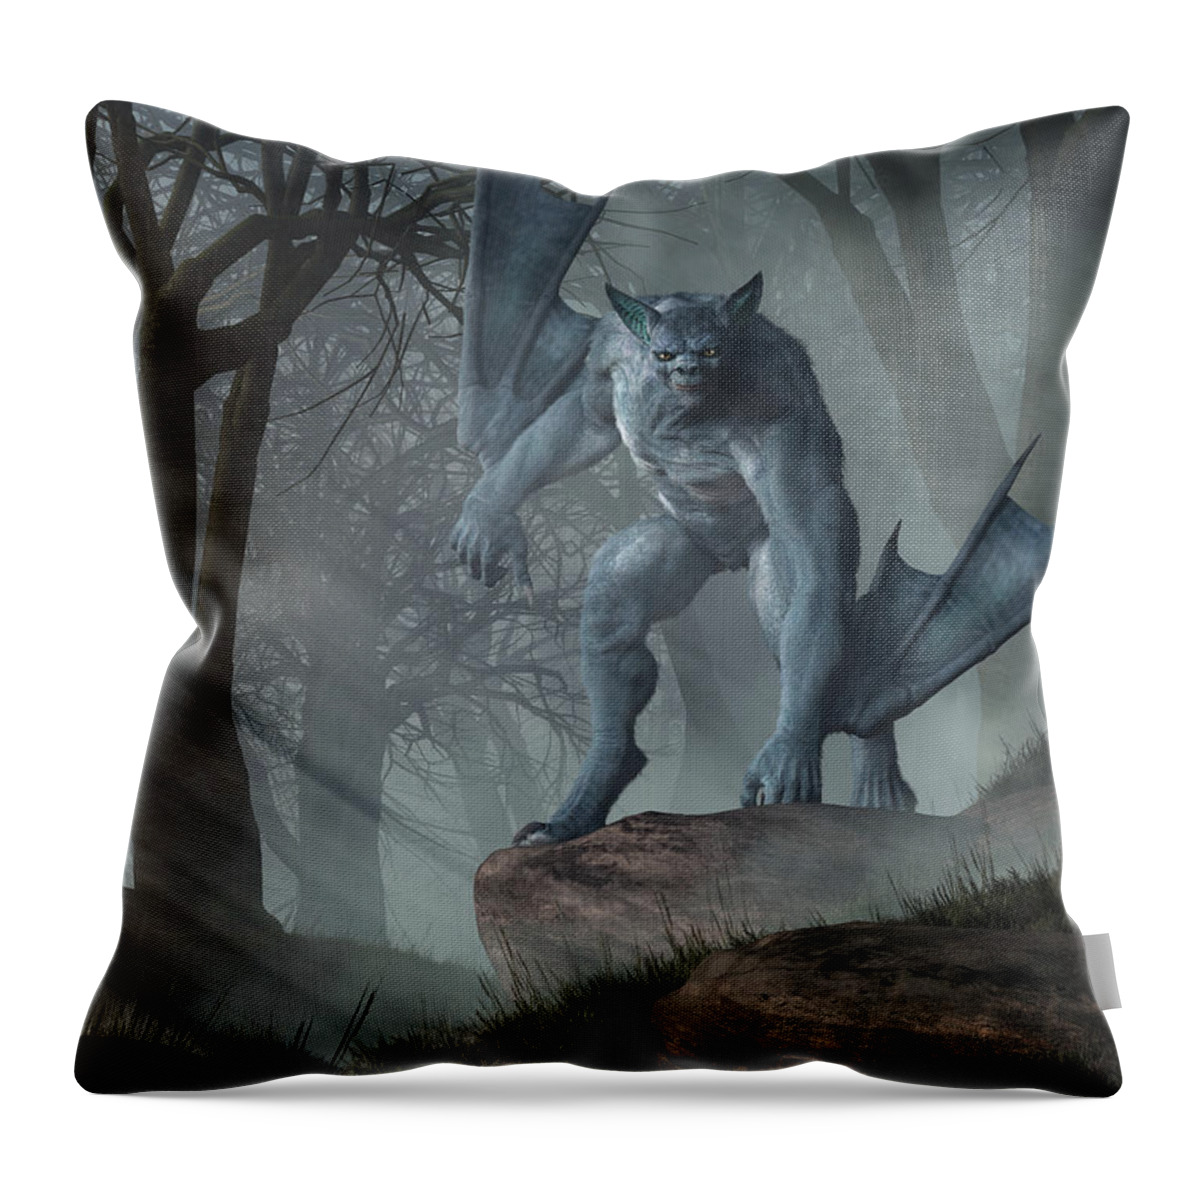 Batsquatch Throw Pillow featuring the digital art Batsquatch by Daniel Eskridge